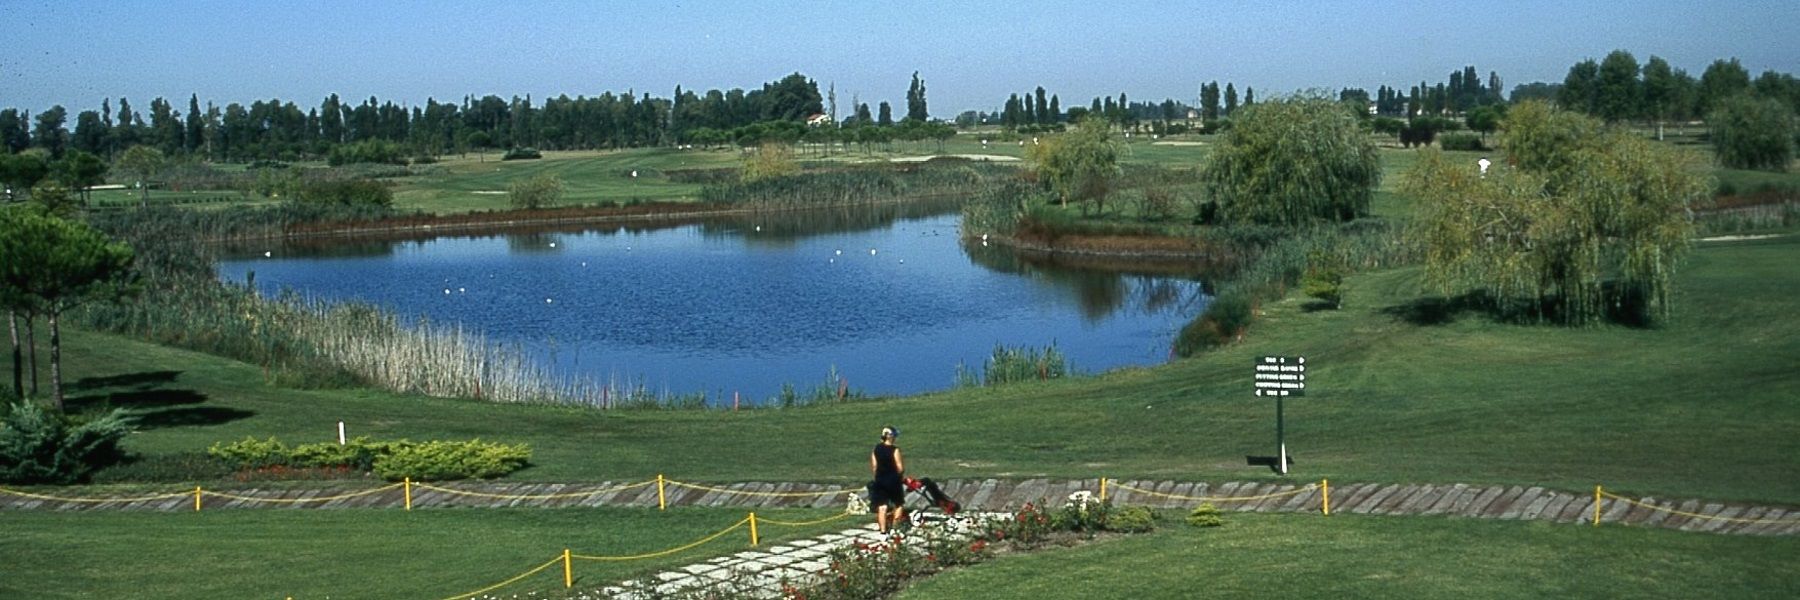 Adriatic Golf Club Cervia - Rendez-vous Rendez-vous du mois d'août